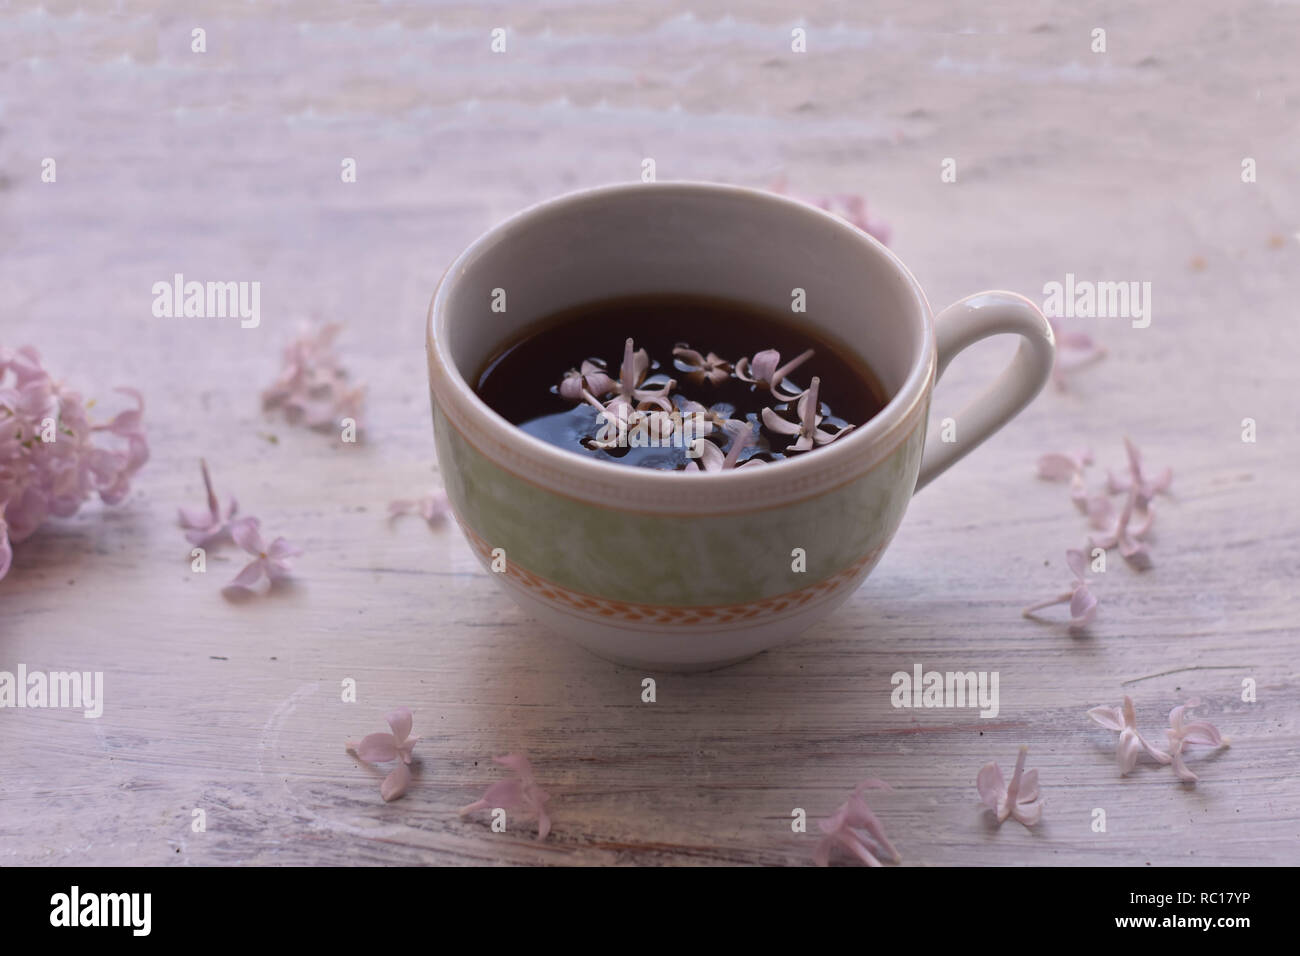 Lila Lila Blumen und Tasse Tee auf hellen Hintergrund/teatime/Frühling Hintergrund/gemütlich zu Hause / home Feder Dekoration - Bild Stockfoto